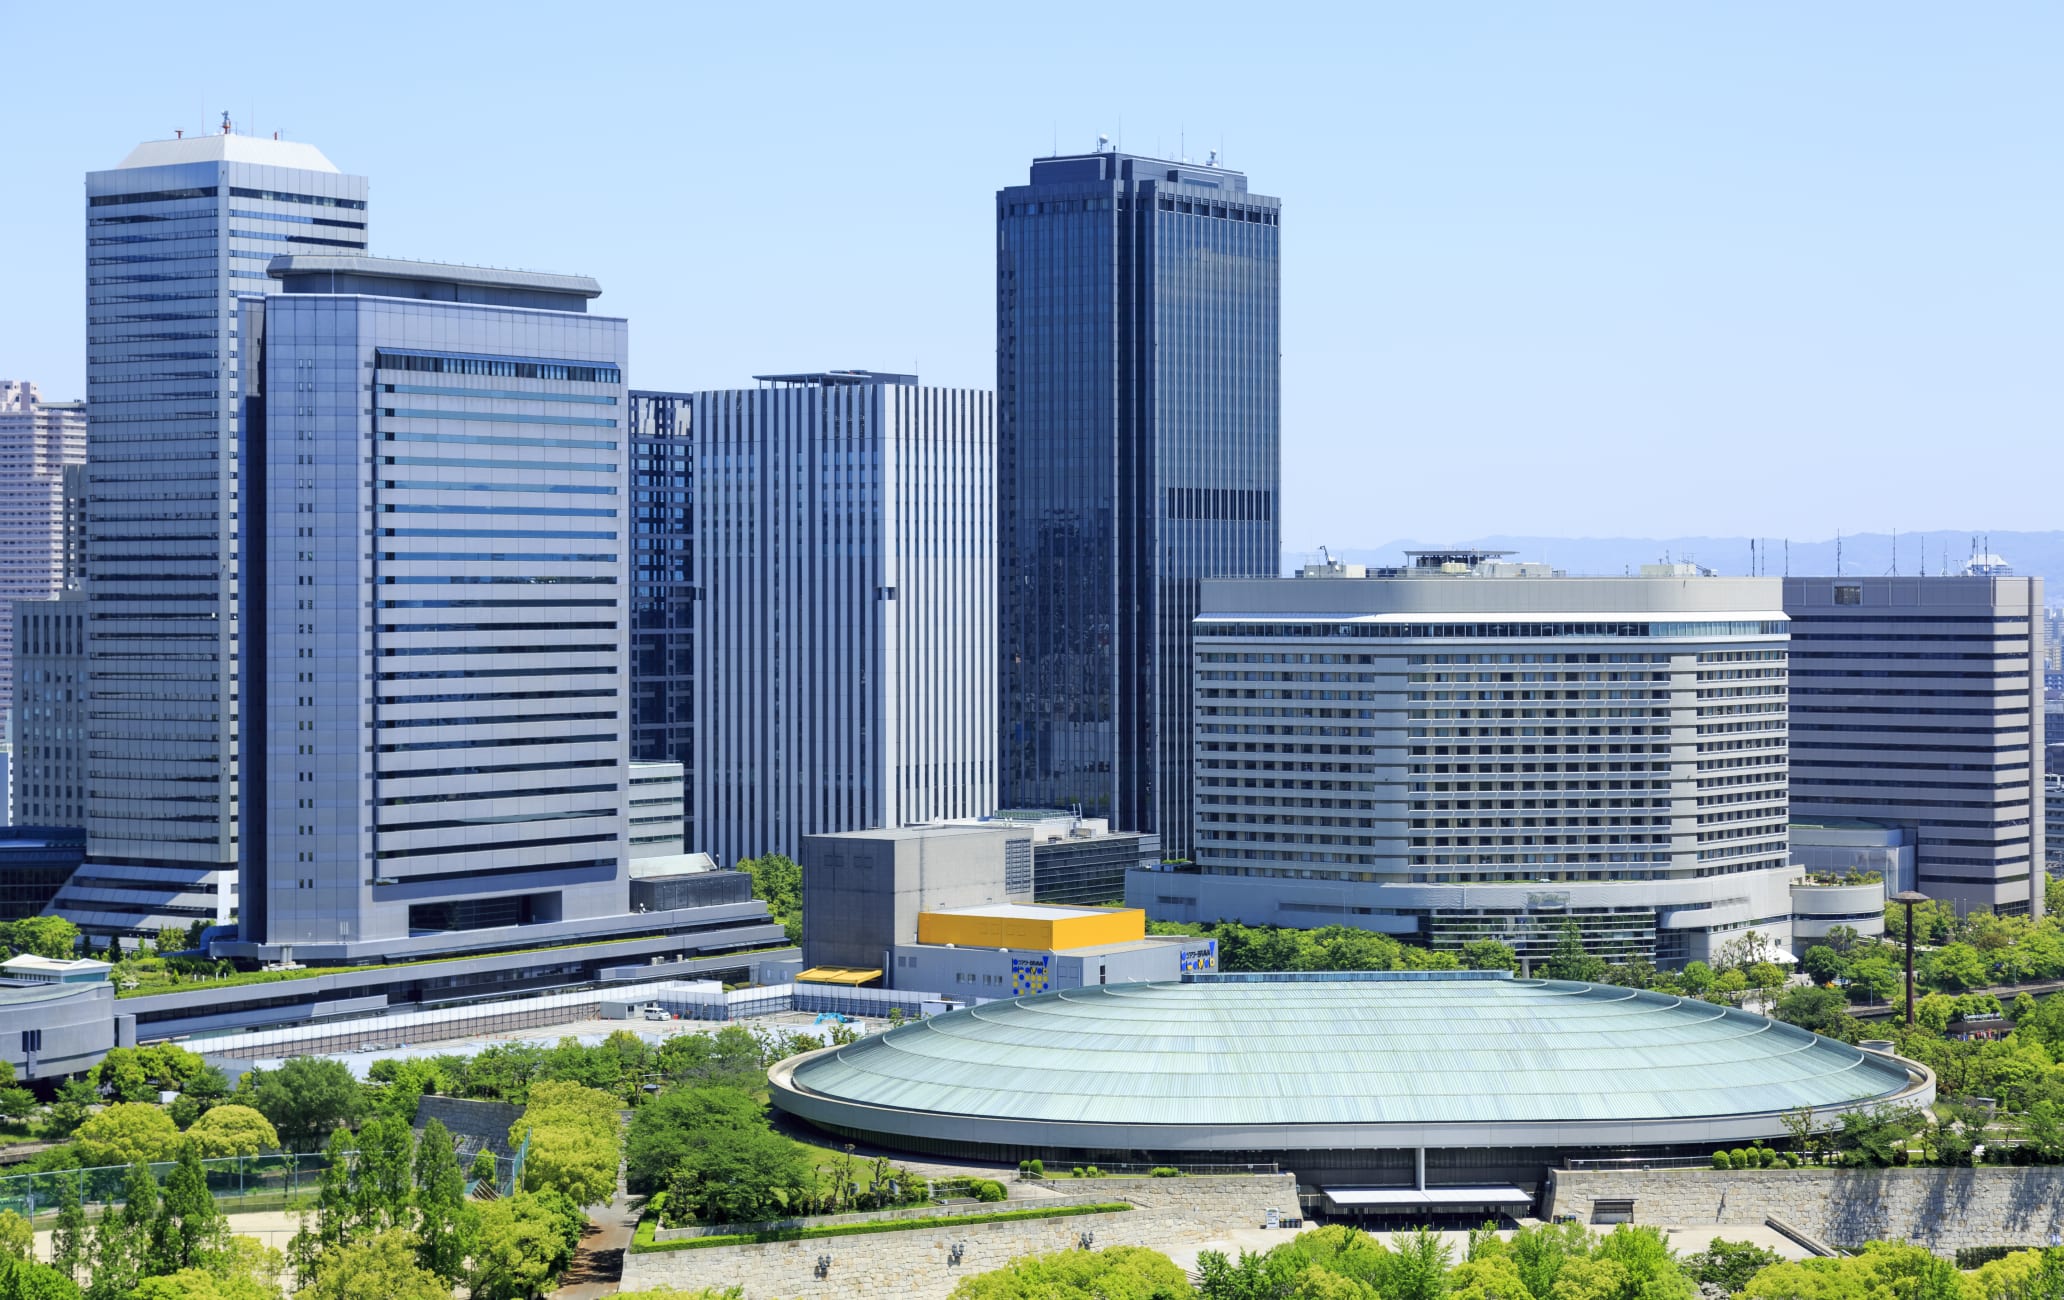 Osaka-jo Hall